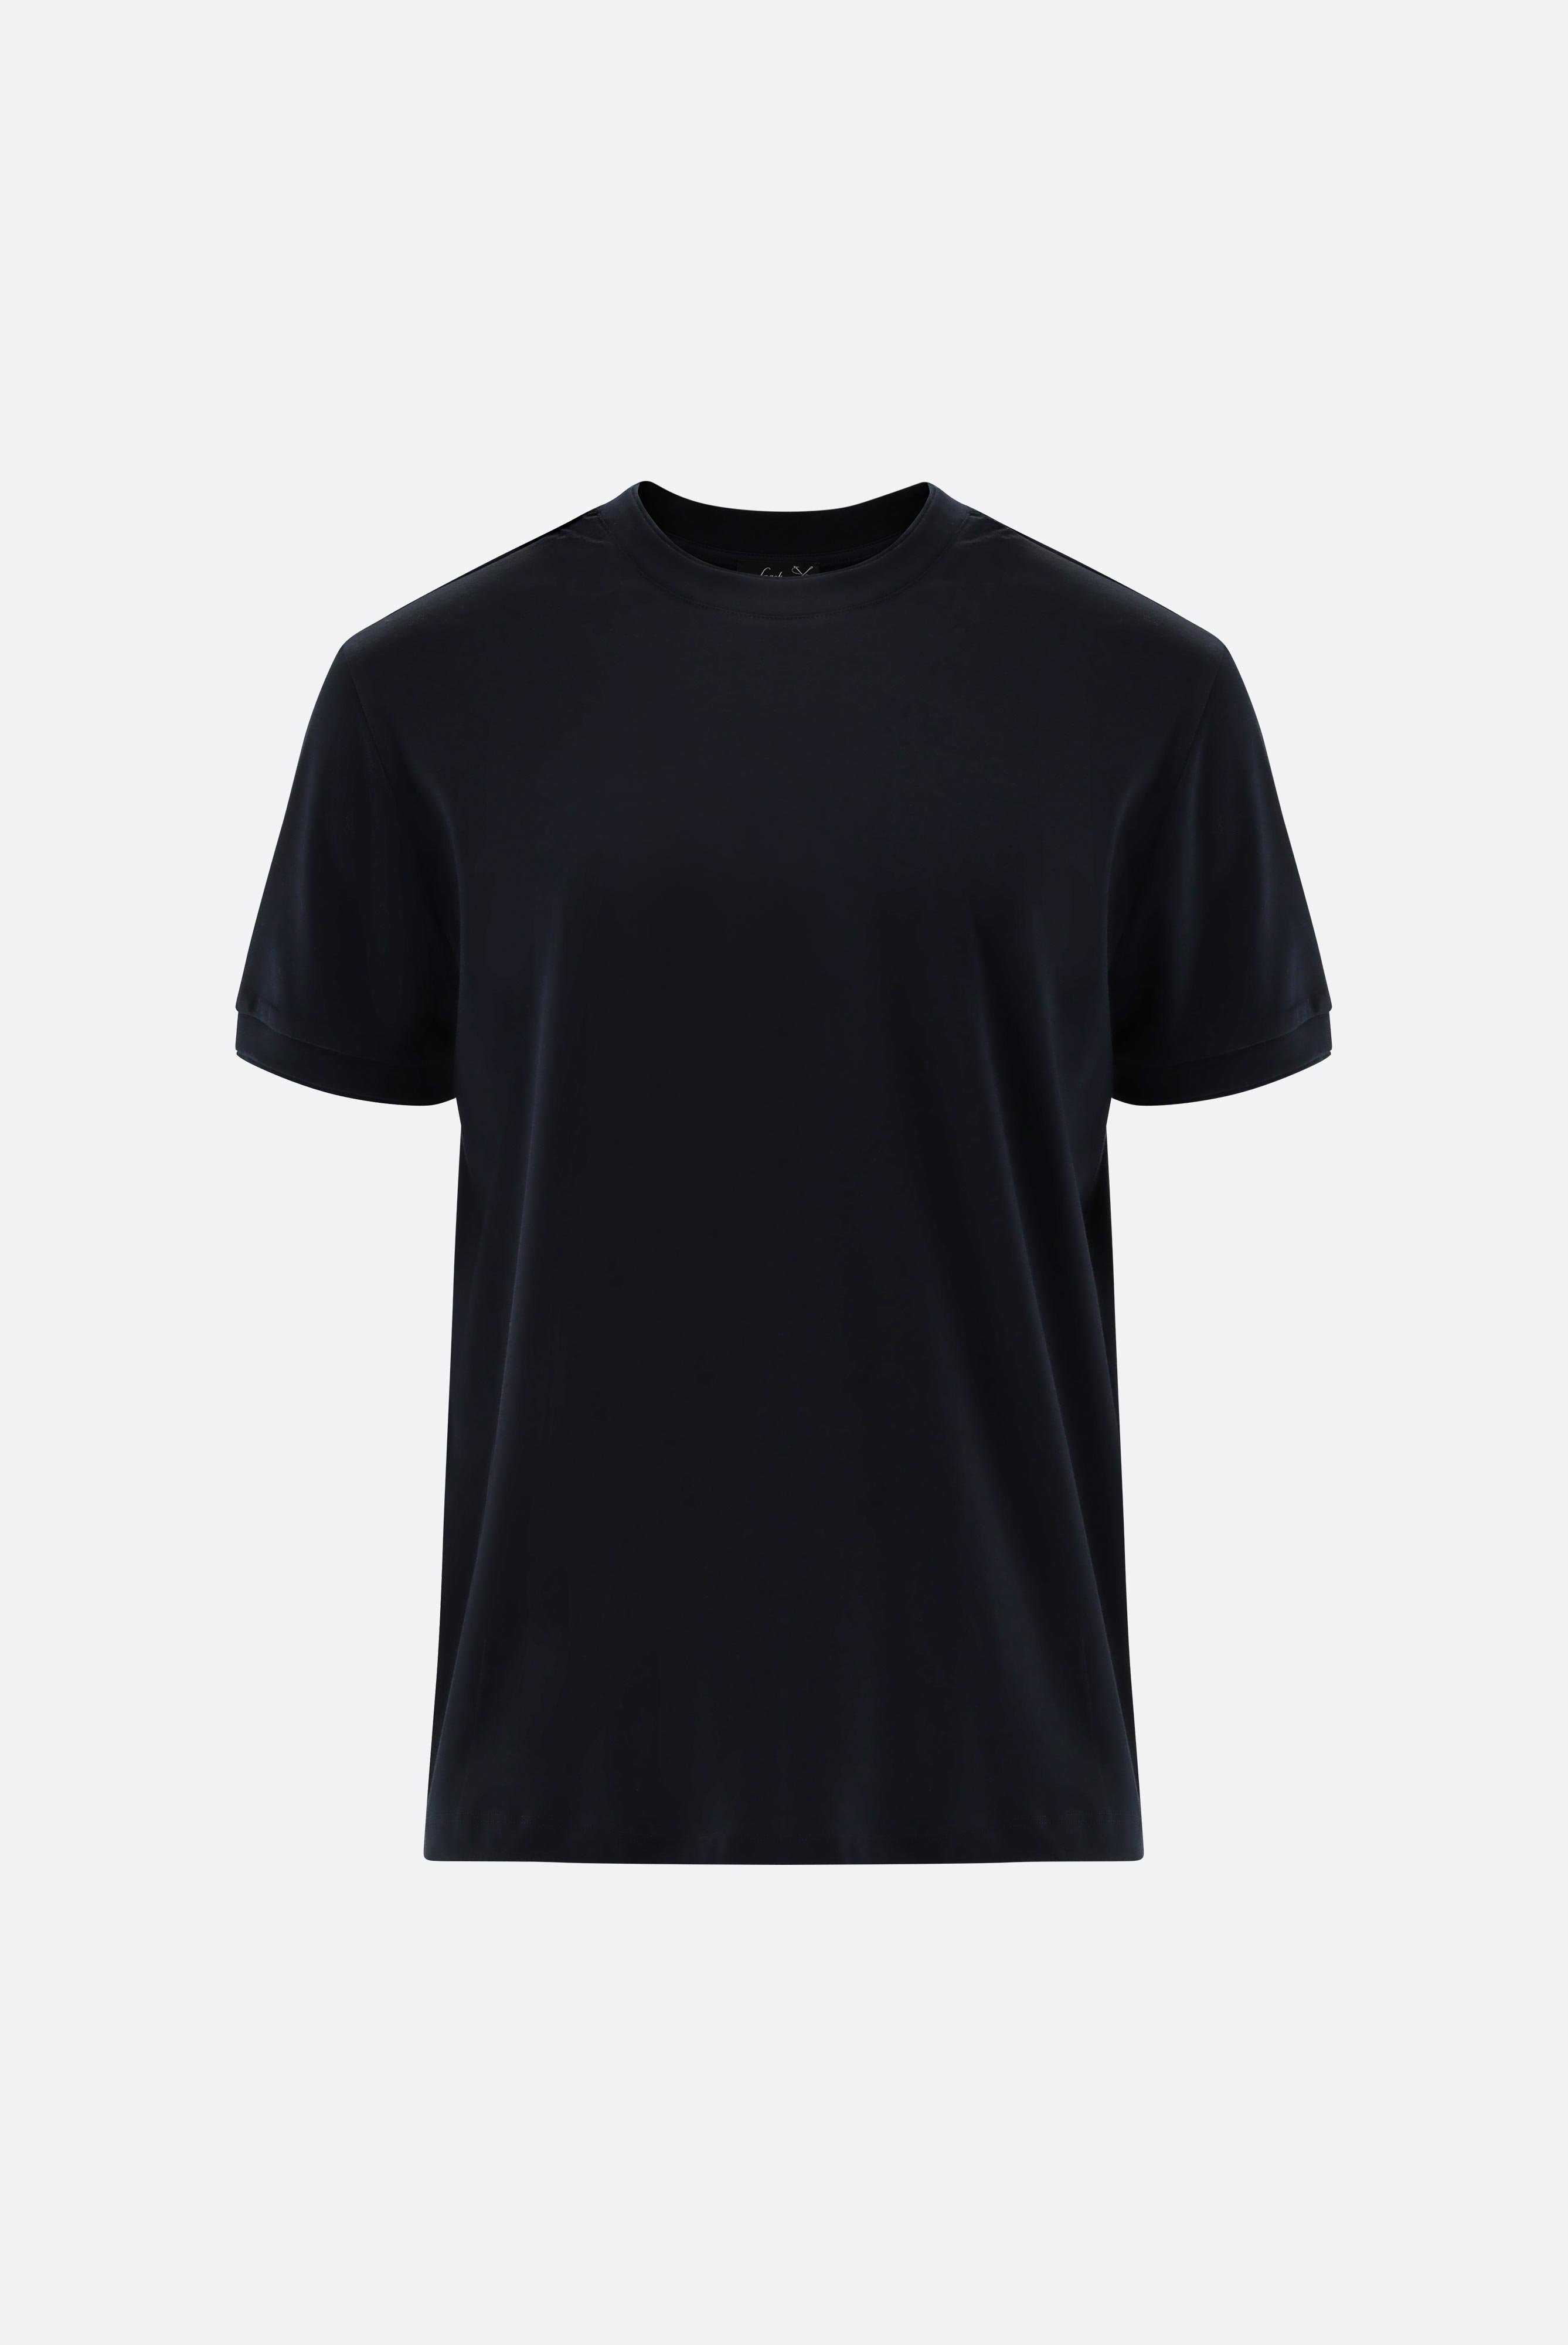 T-Shirts+T-Shirt mit Paspel Details+20.1673.U2.180053.790.S